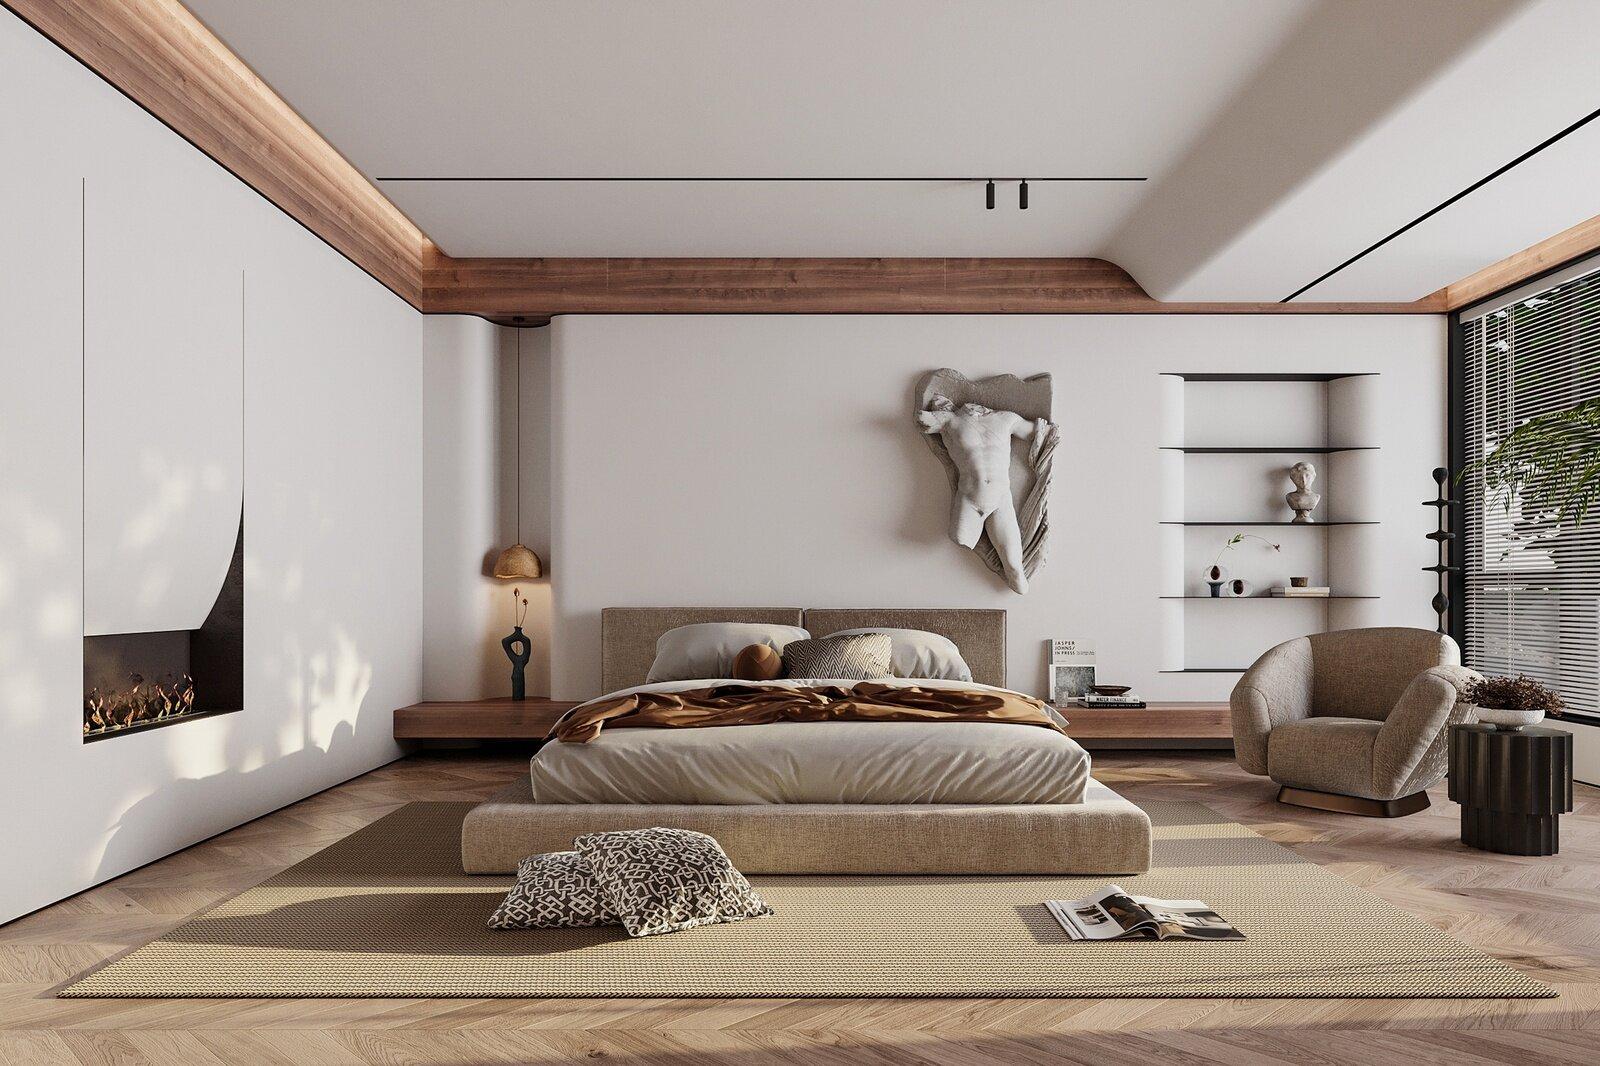 Wabi Sabi - hòa nhập sự hoàn thiện và khuyết điểm trong thiết kế nội thất (ảnh: Internet)